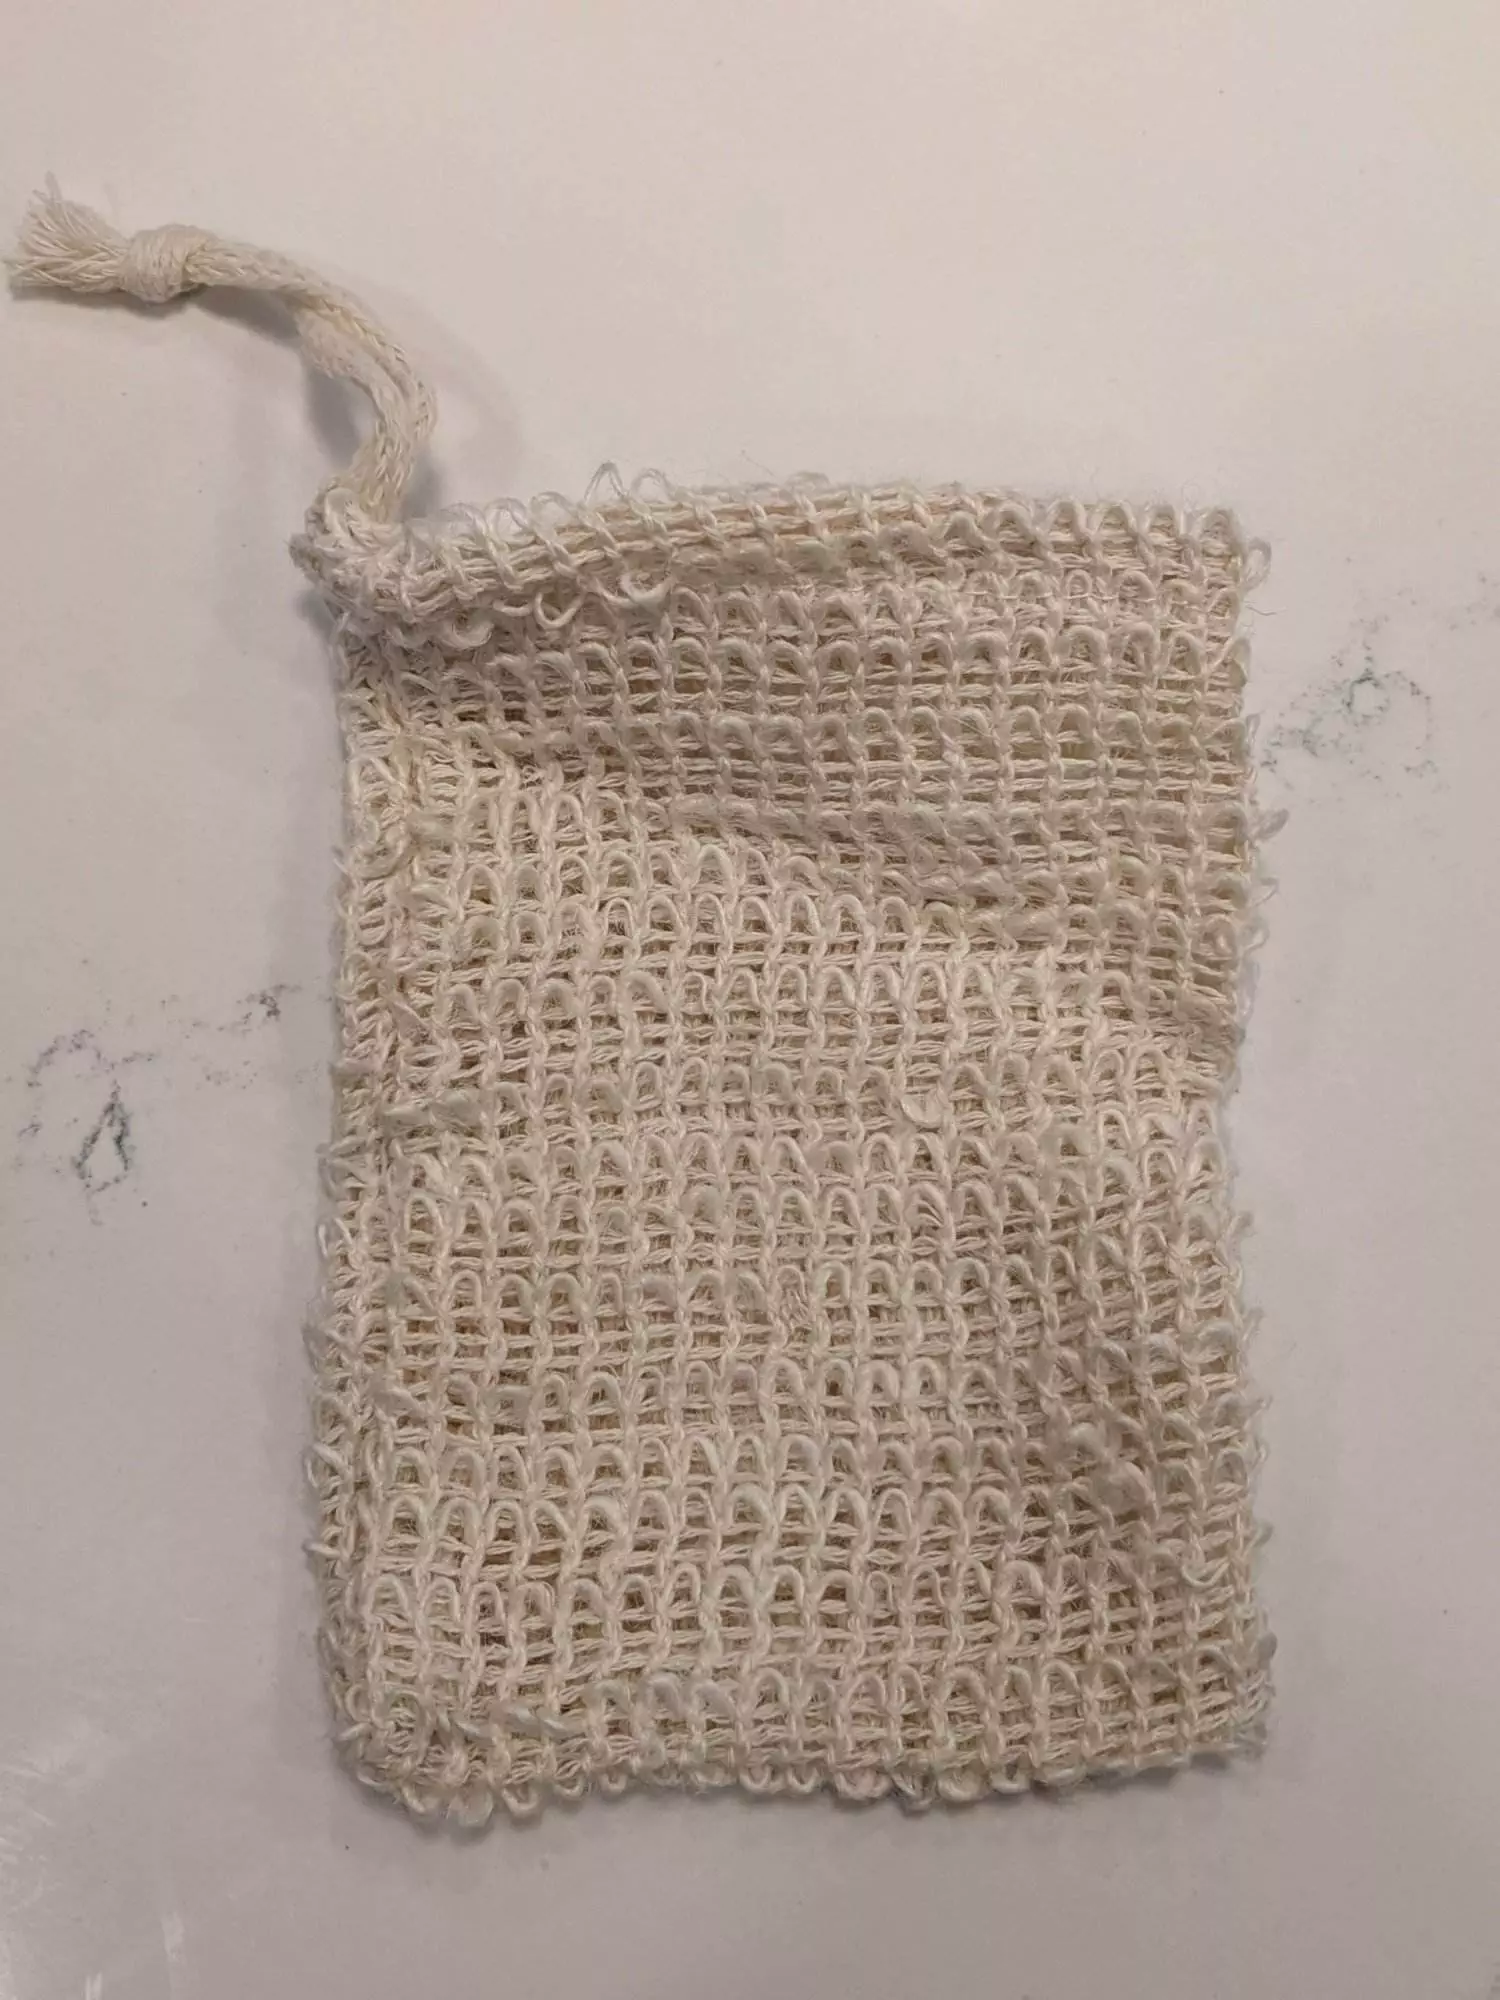 soap saver mesh bag